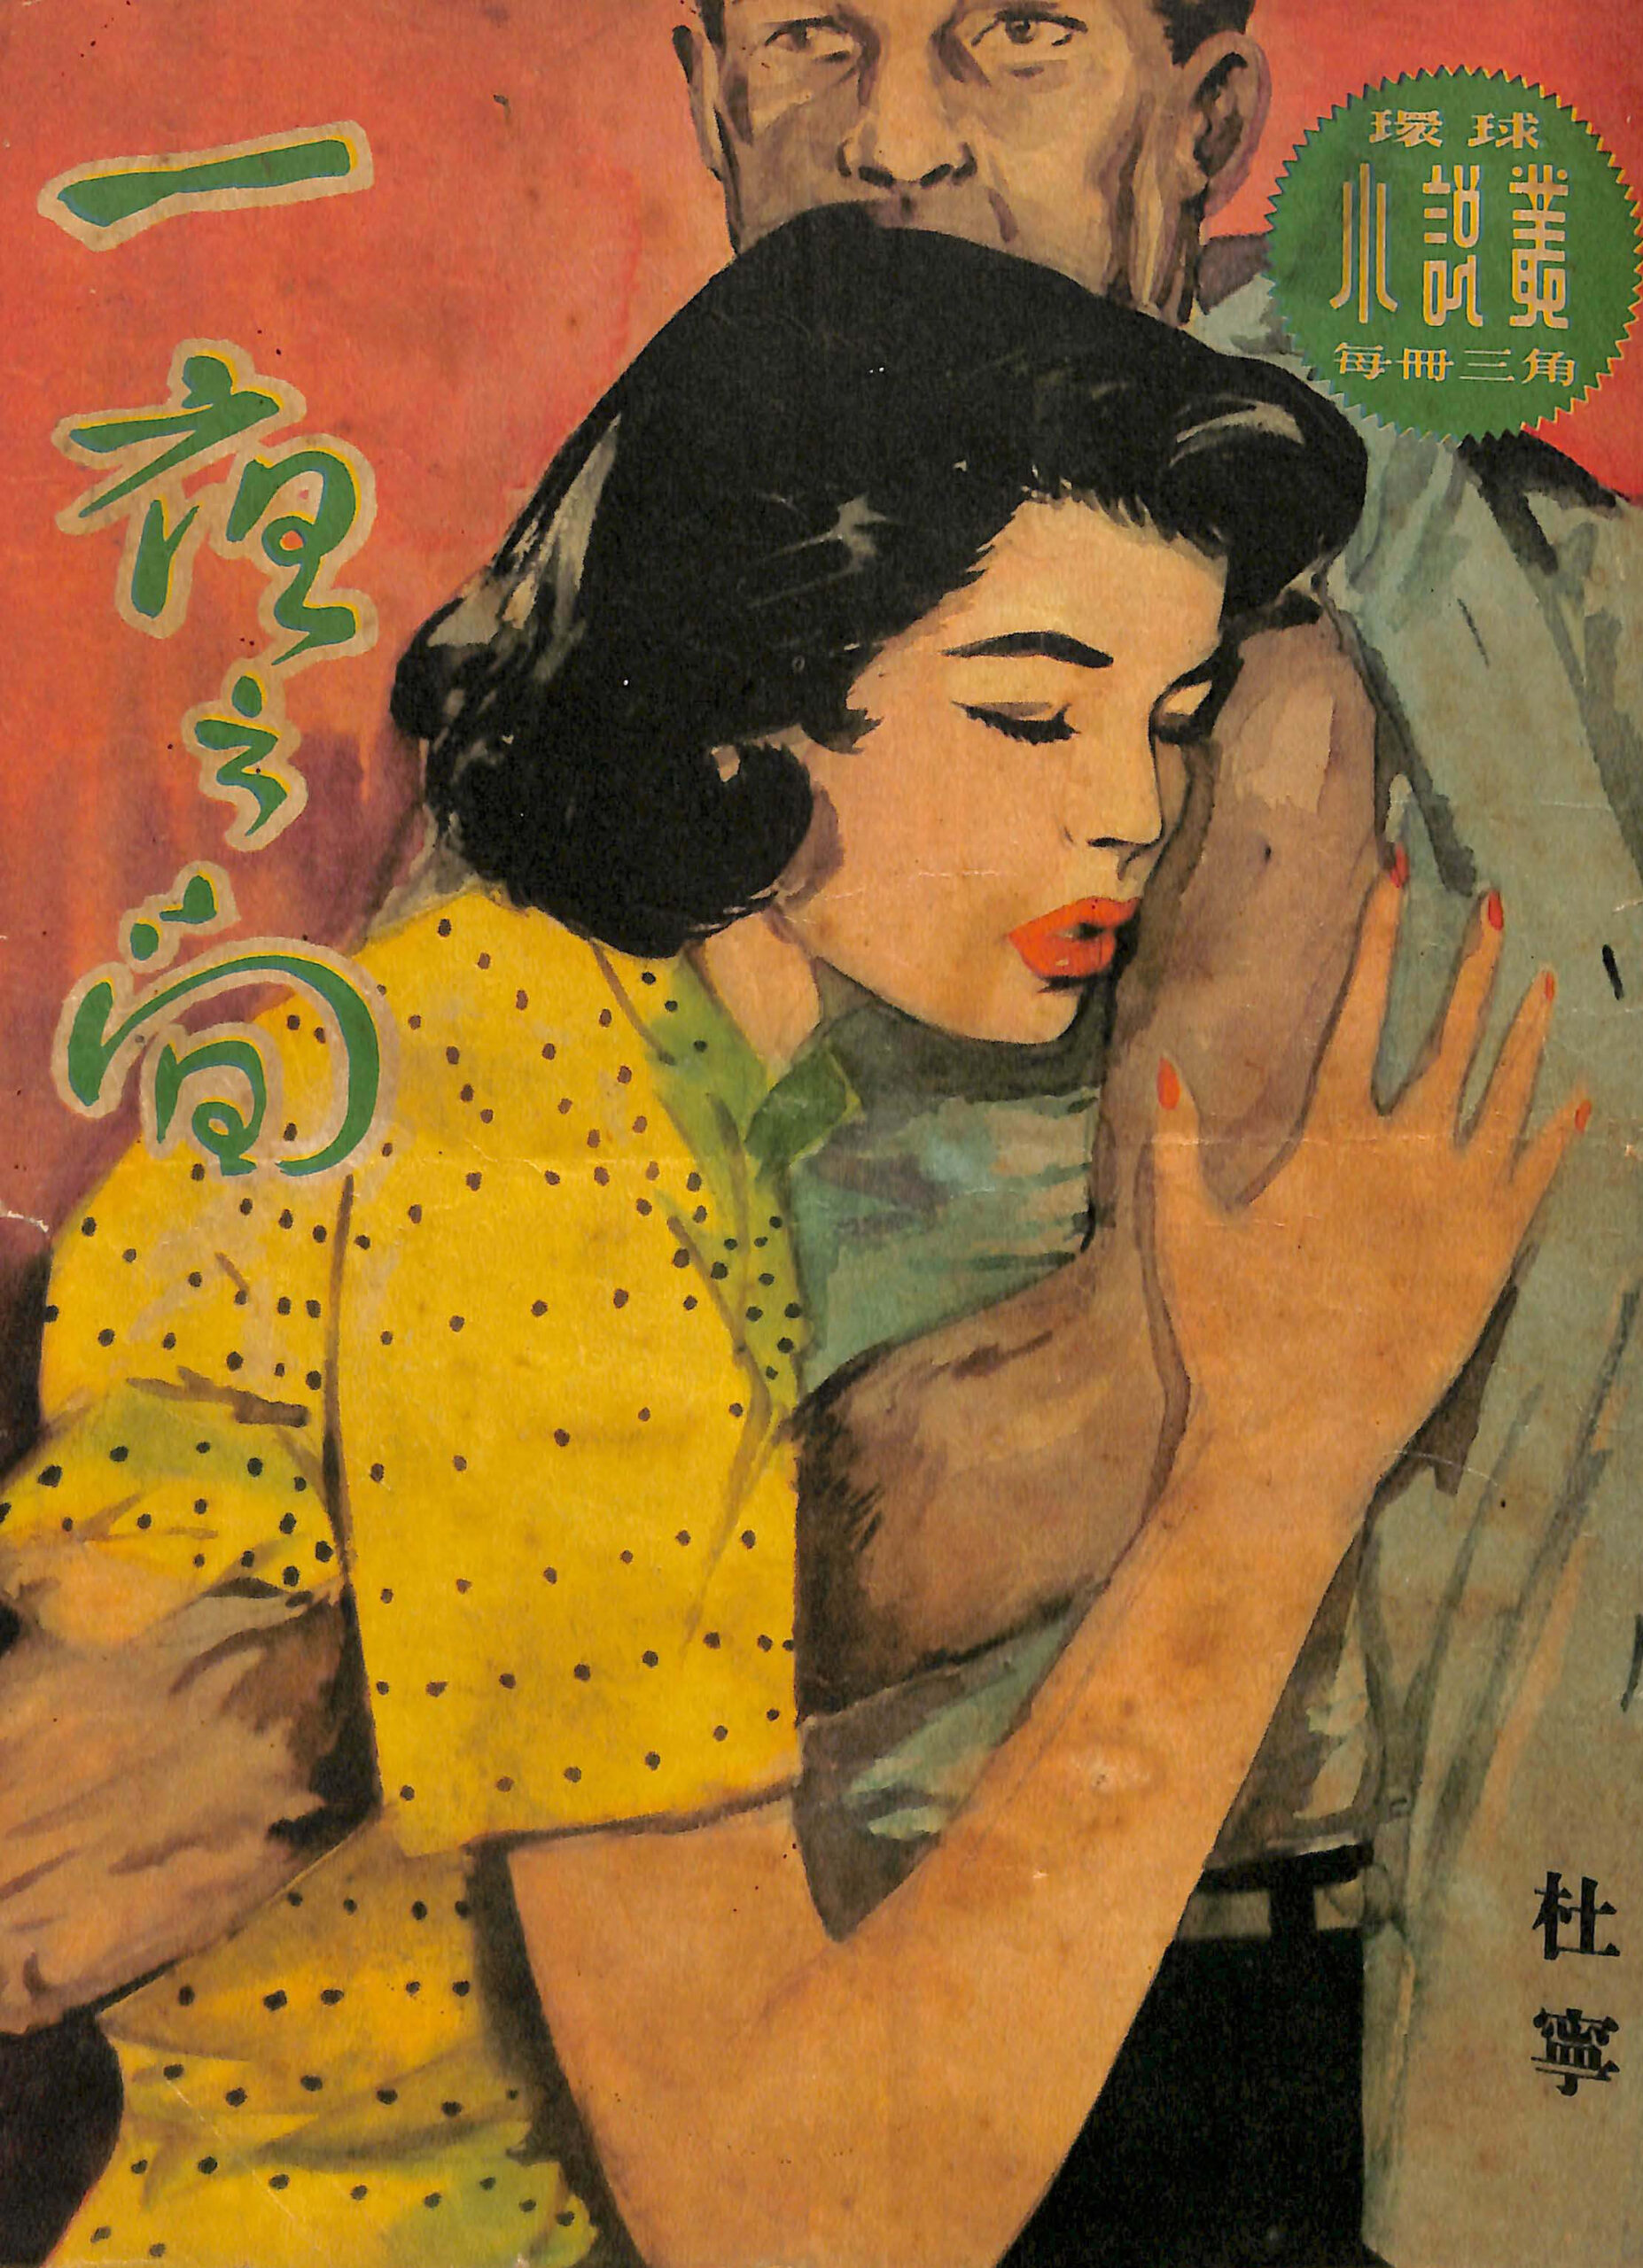 杜寧第一本「三毫子小說」〈一夜之間〉的封面。